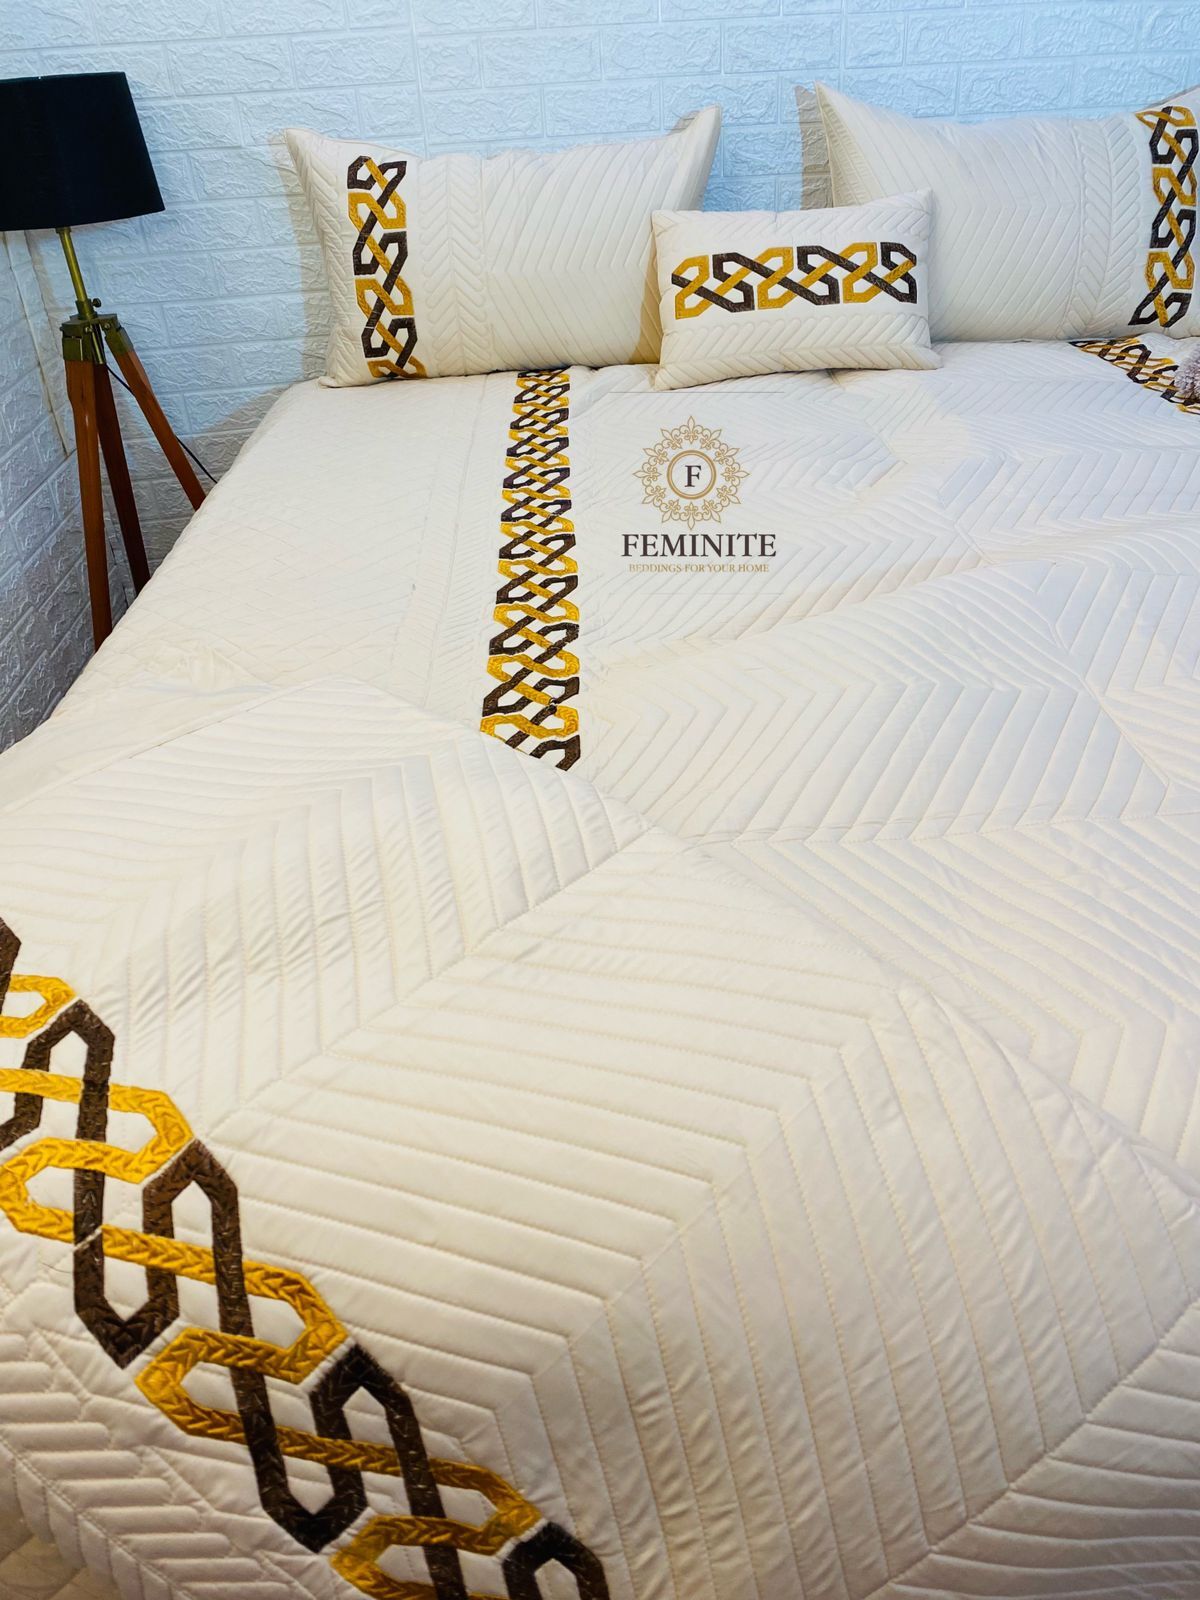 Designer Bed Cover